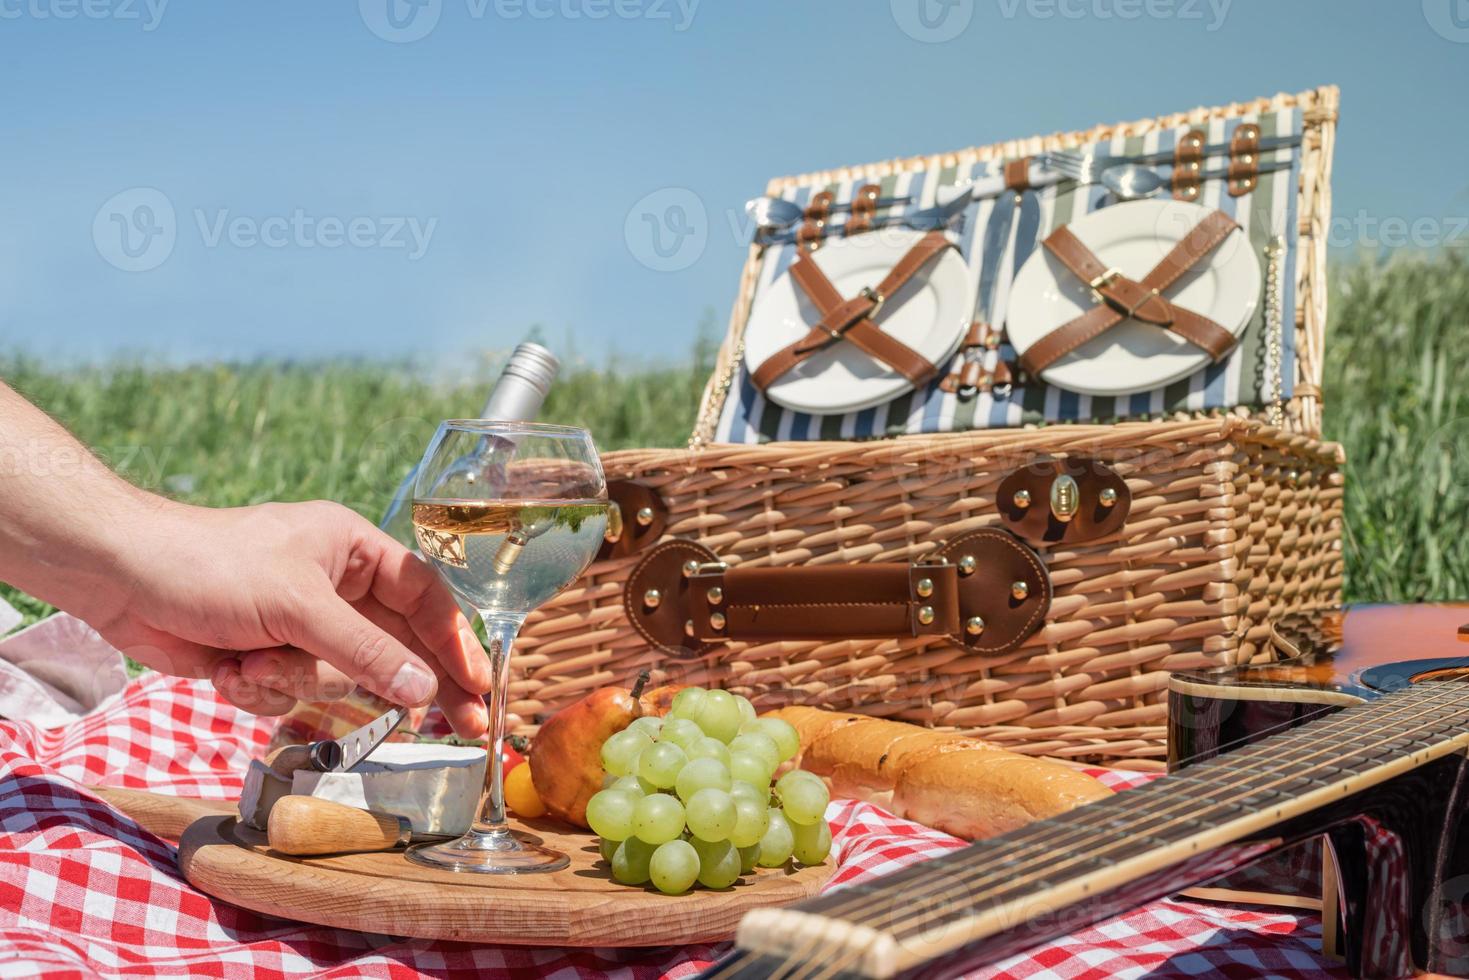 primer plano de una cesta de picnic con bebidas y comida en el césped. mano masculina sosteniendo una copa de vino foto